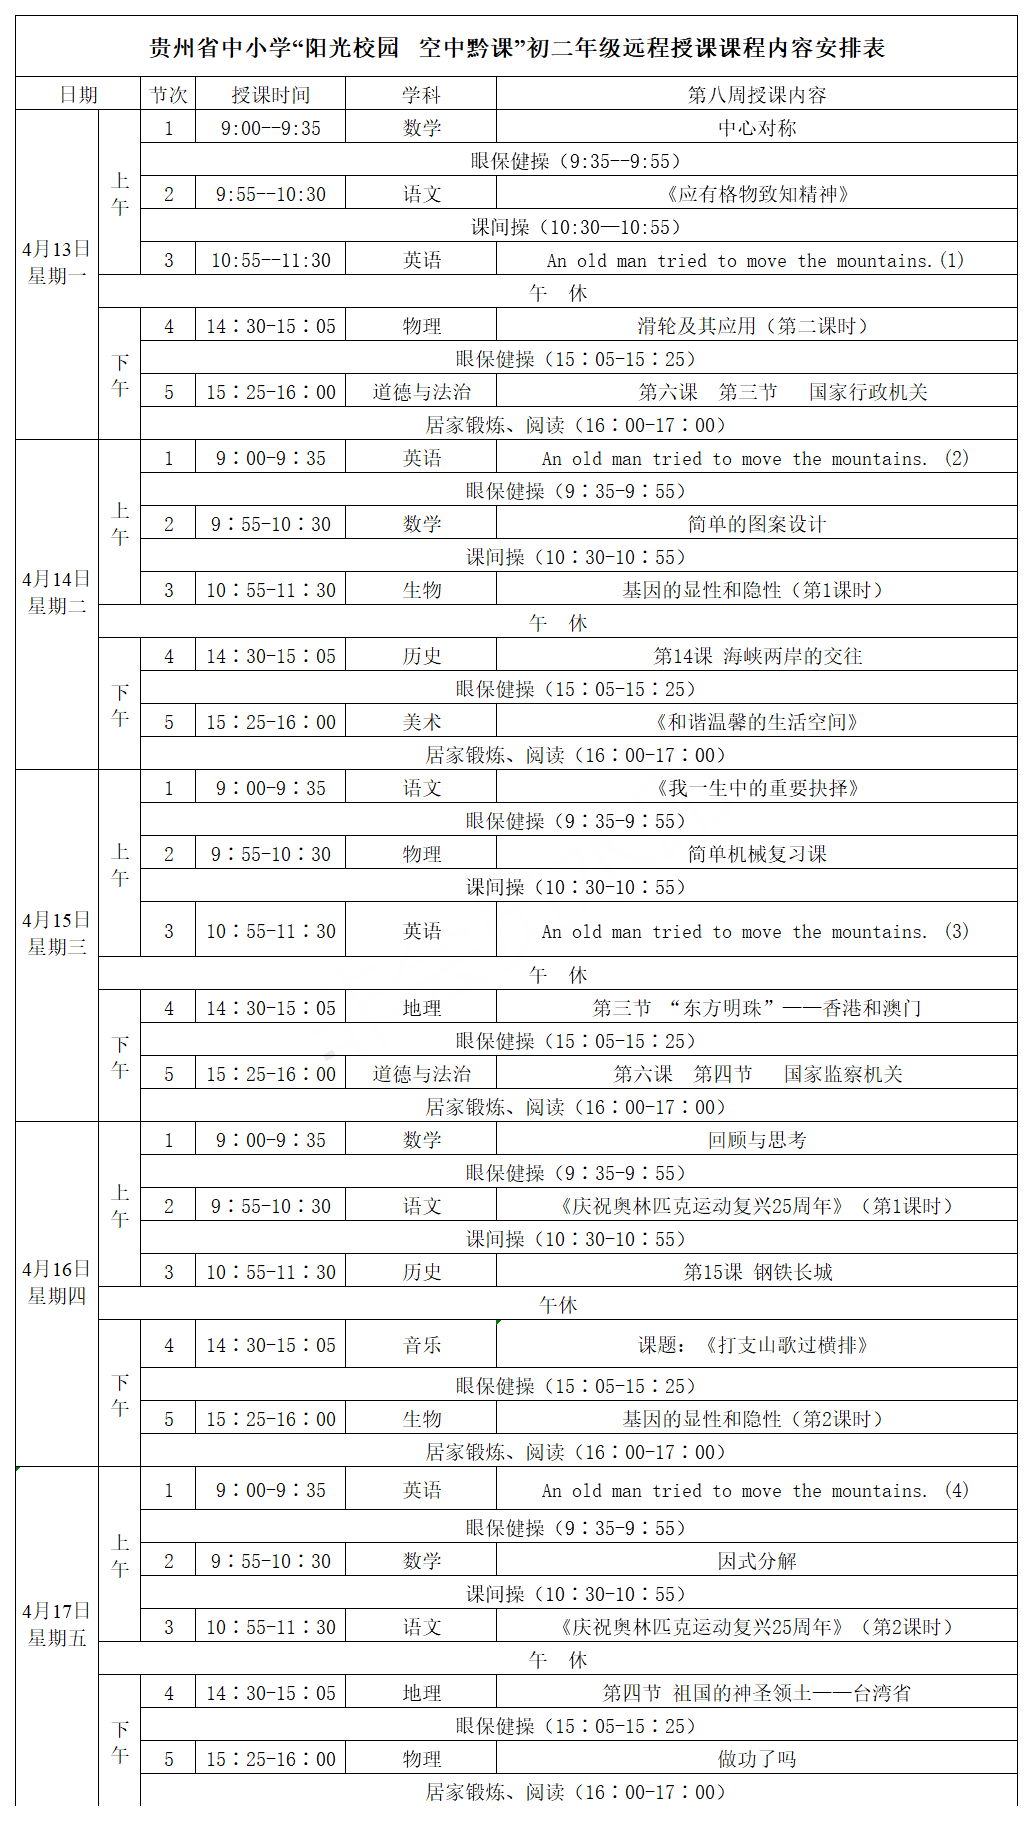 贵州中小学“空中课堂”课程表完整版公布（4月13日2